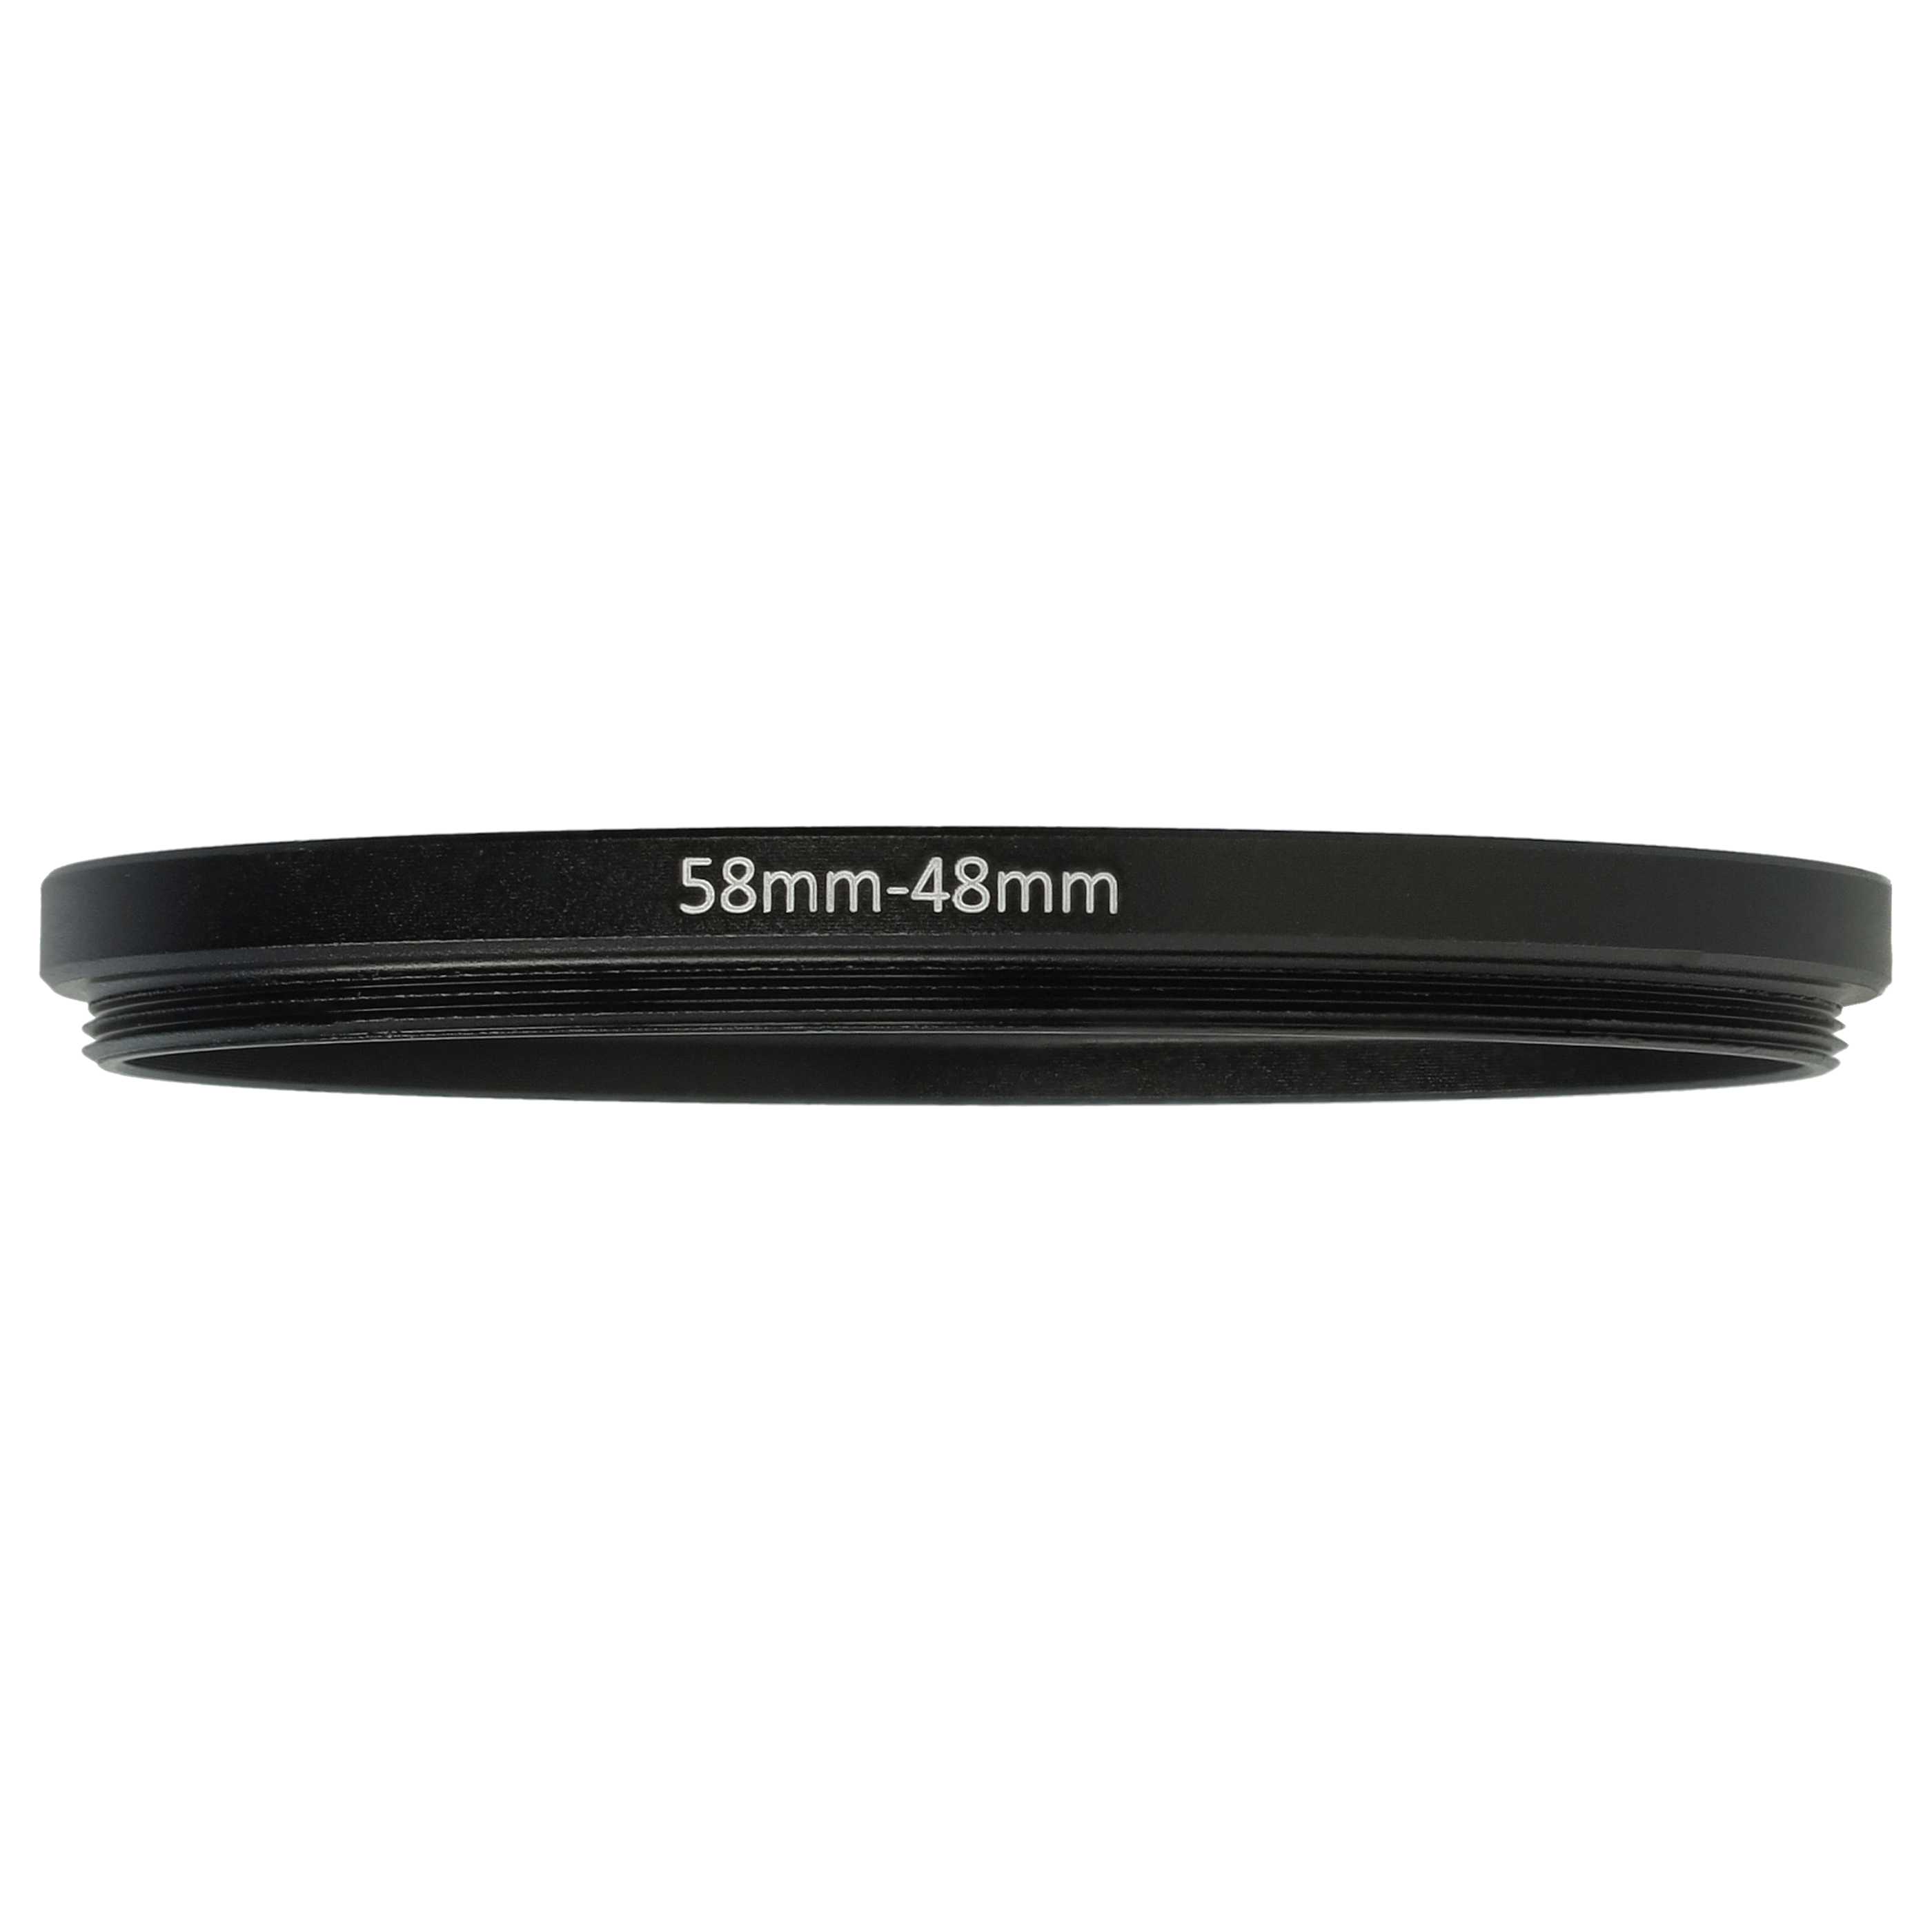 Anello adattatore step-down da 58 mm a 48 mm per obiettivo fotocamera - Adattatore filtro, metallo, nero